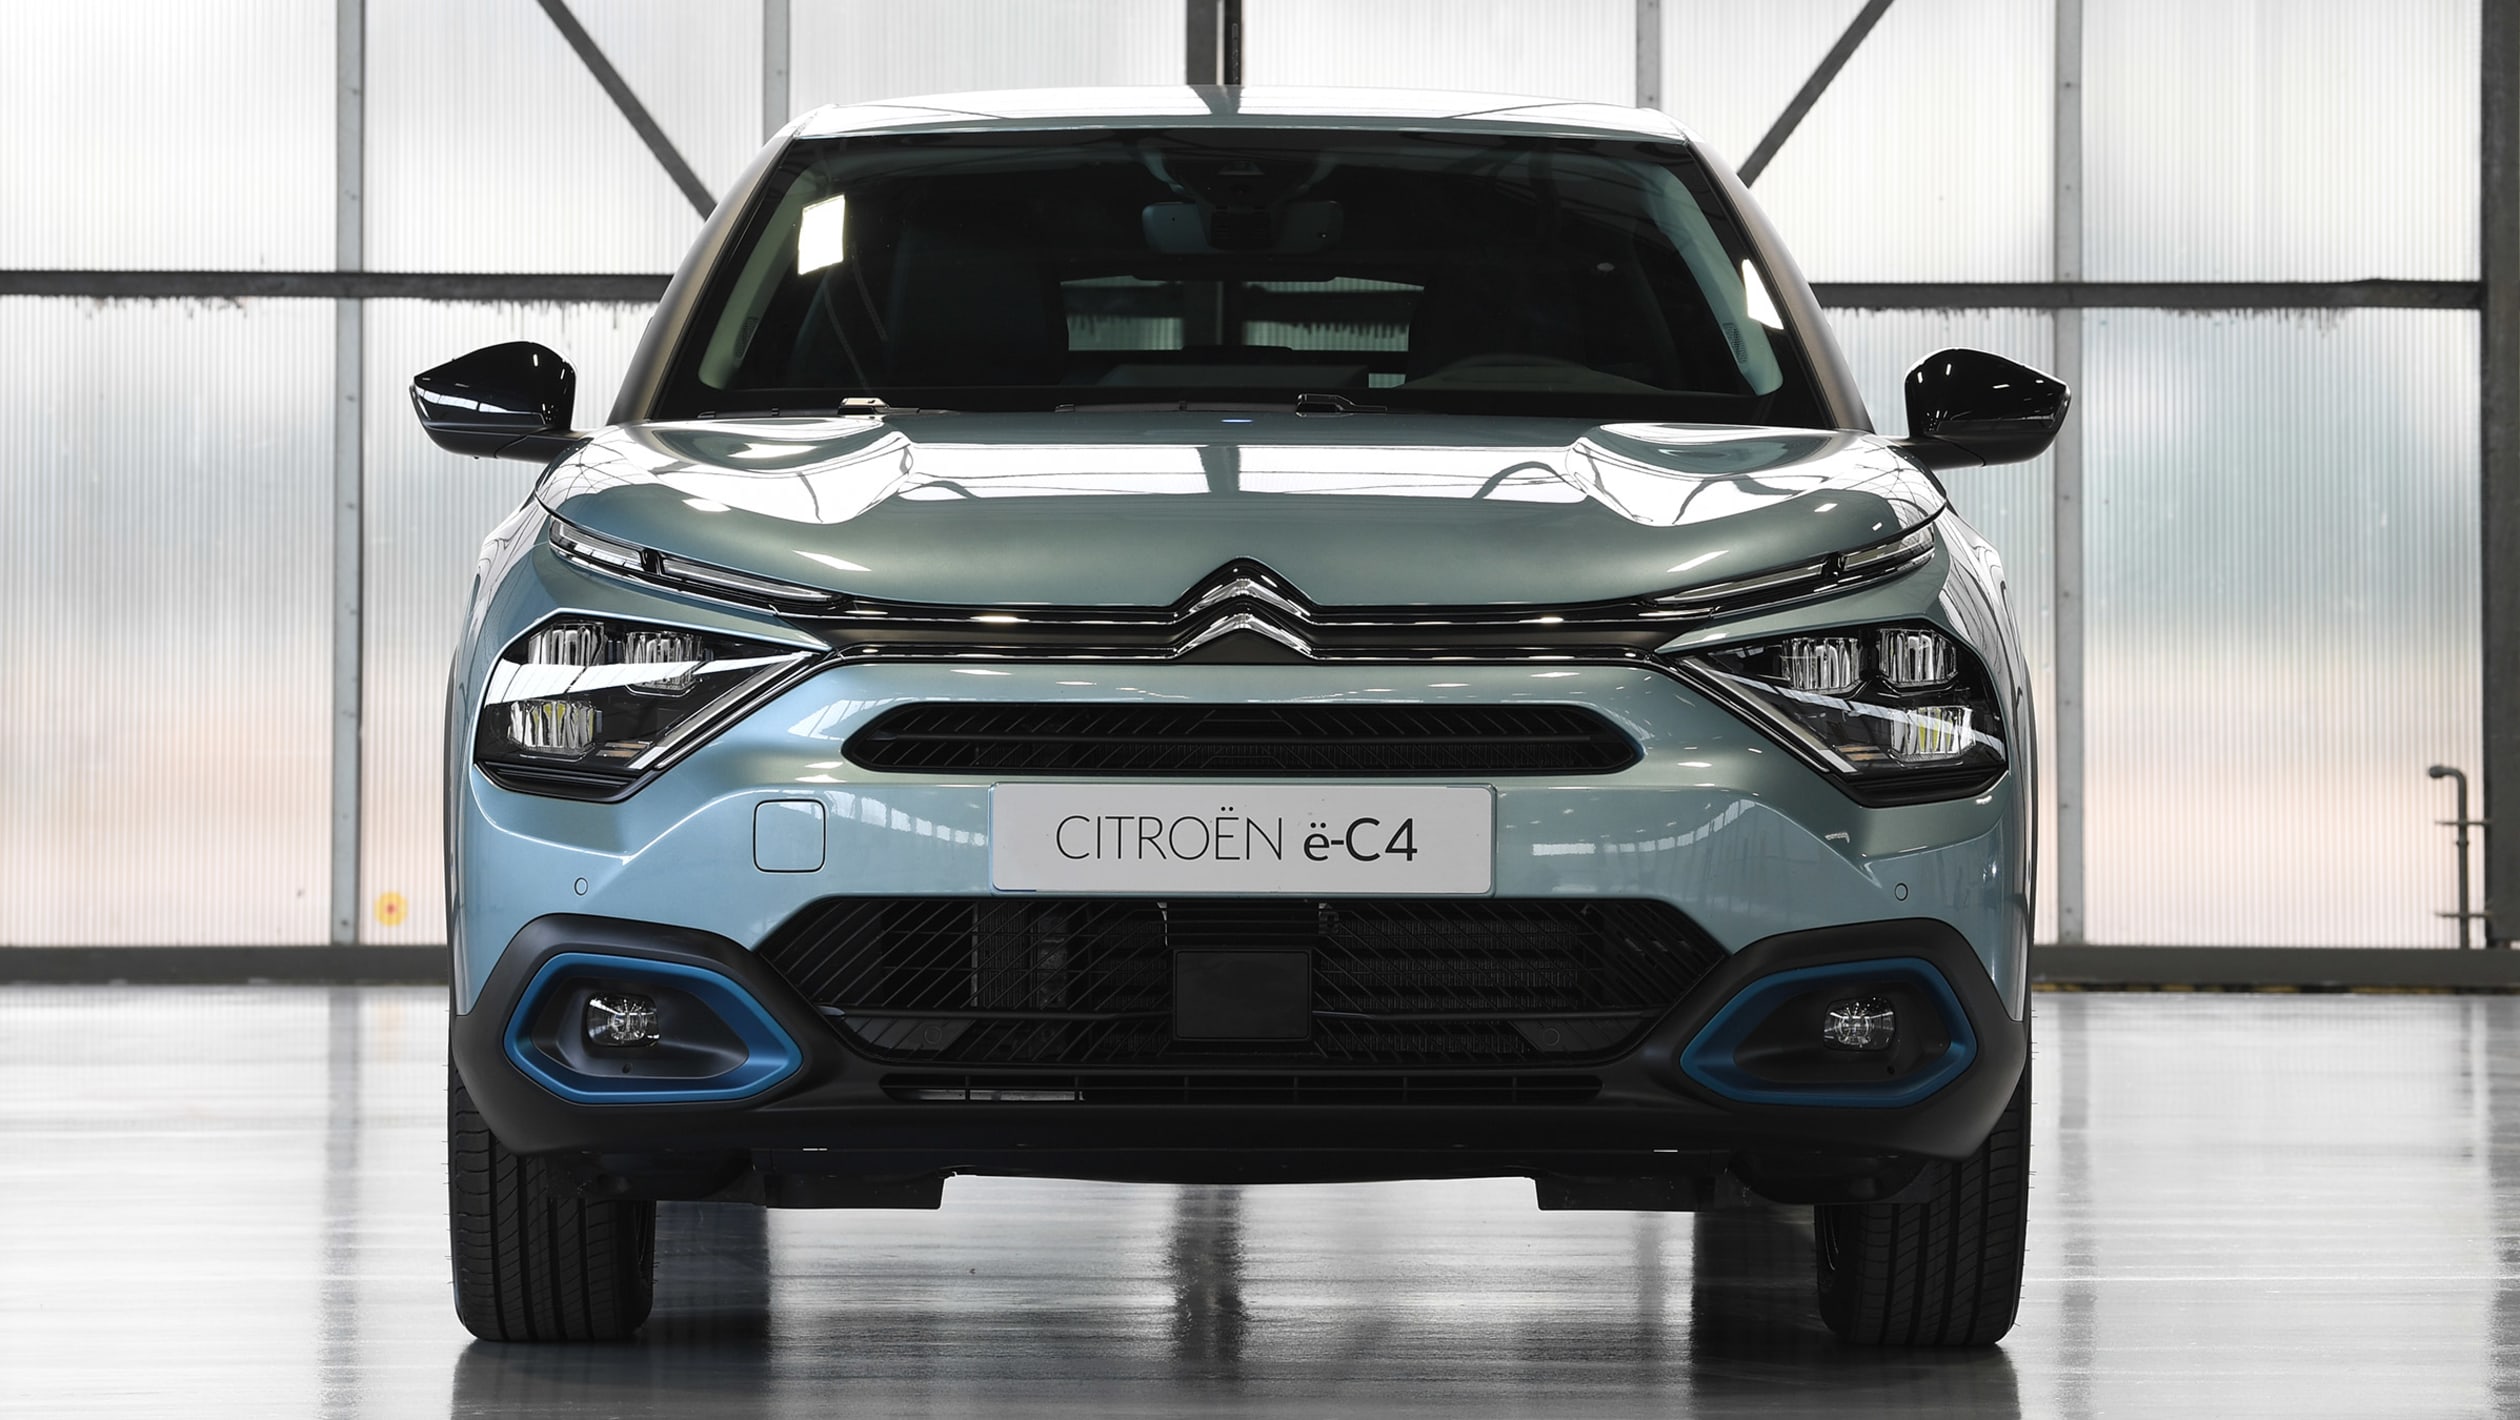 Nowy Citroën E-C4 Tańszy Niż Toyota Yaris? Tak, W Programie Mój Elektryk Dla Firm – Francuskie.pl – Dziennik Motoryzacyjny